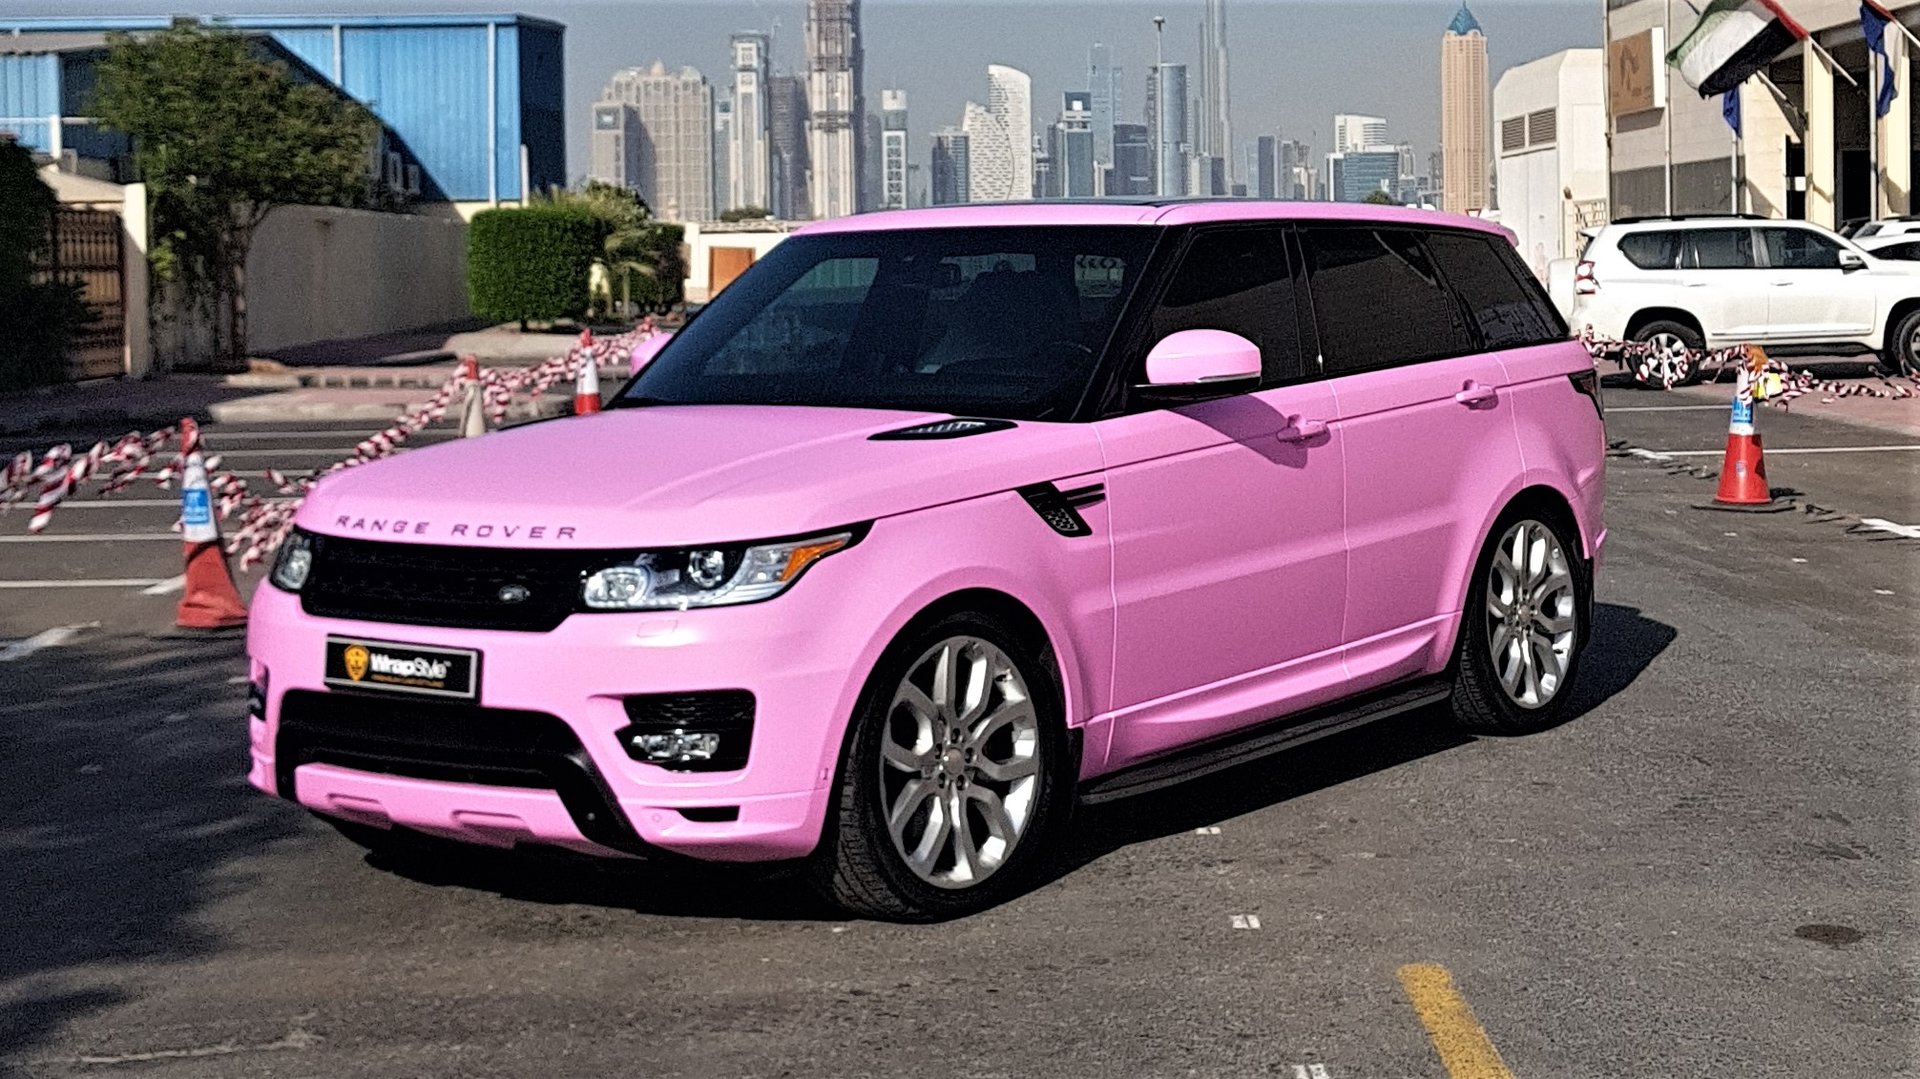 Range Rover Sport - Pink Satin wrap WrapStyle.